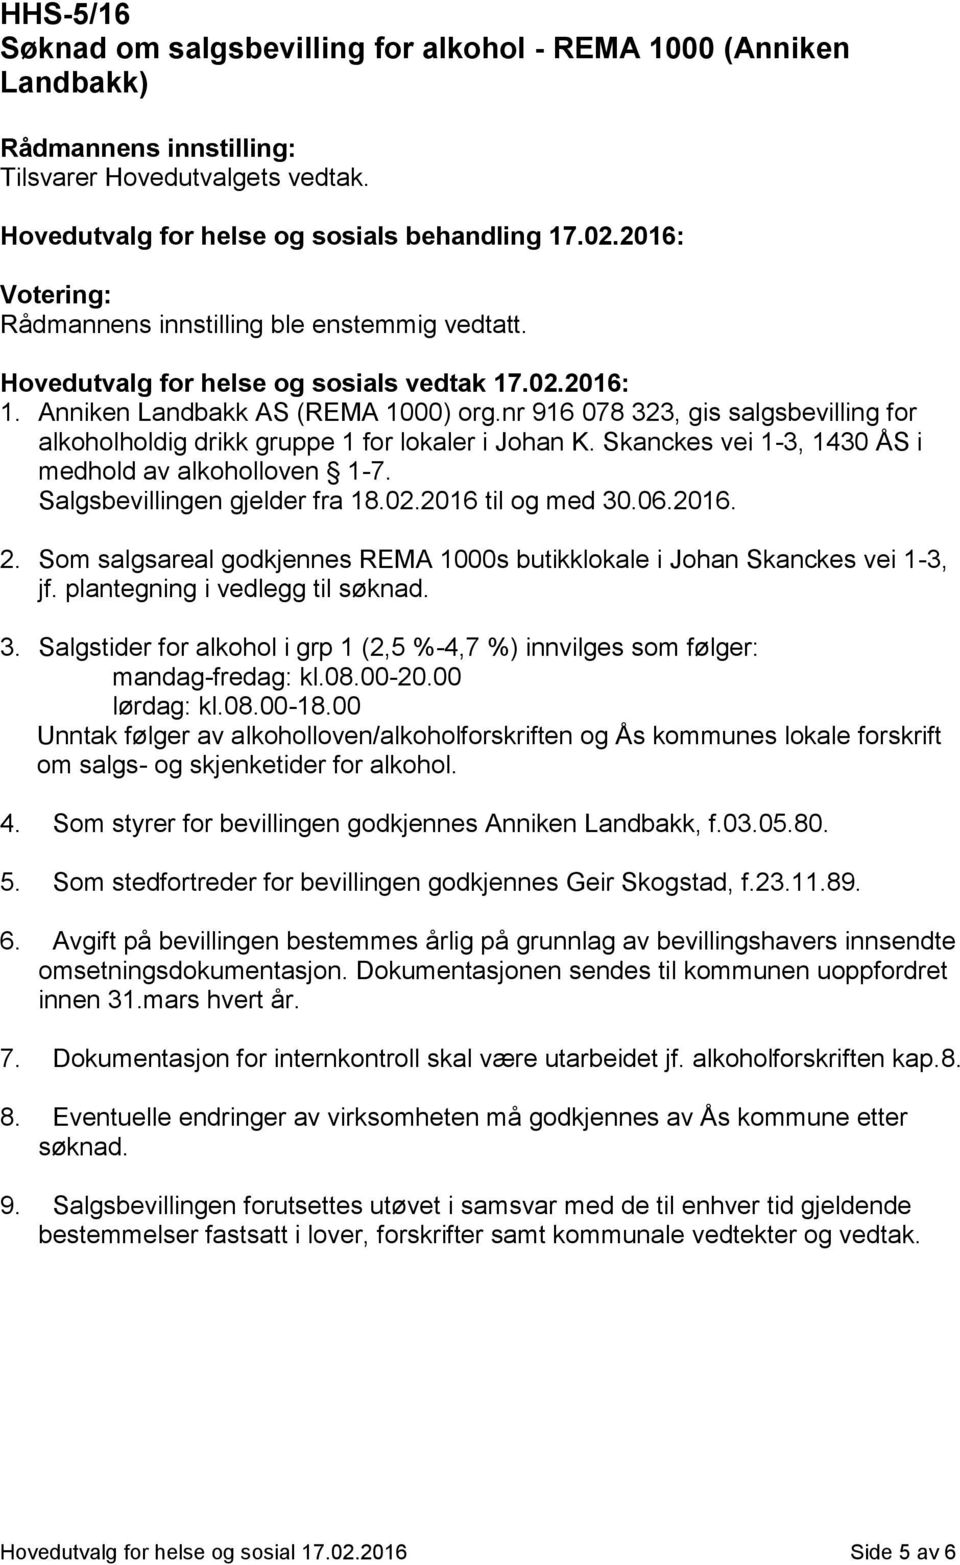 nr 916 078 323, gis salgsbevilling for alkoholholdig drikk gruppe 1 for lokaler i Johan K. Skanckes vei 1-3, 1430 ÅS i medhold av alkoholloven 1-7. Salgsbevillingen gjelder fra 18.02.